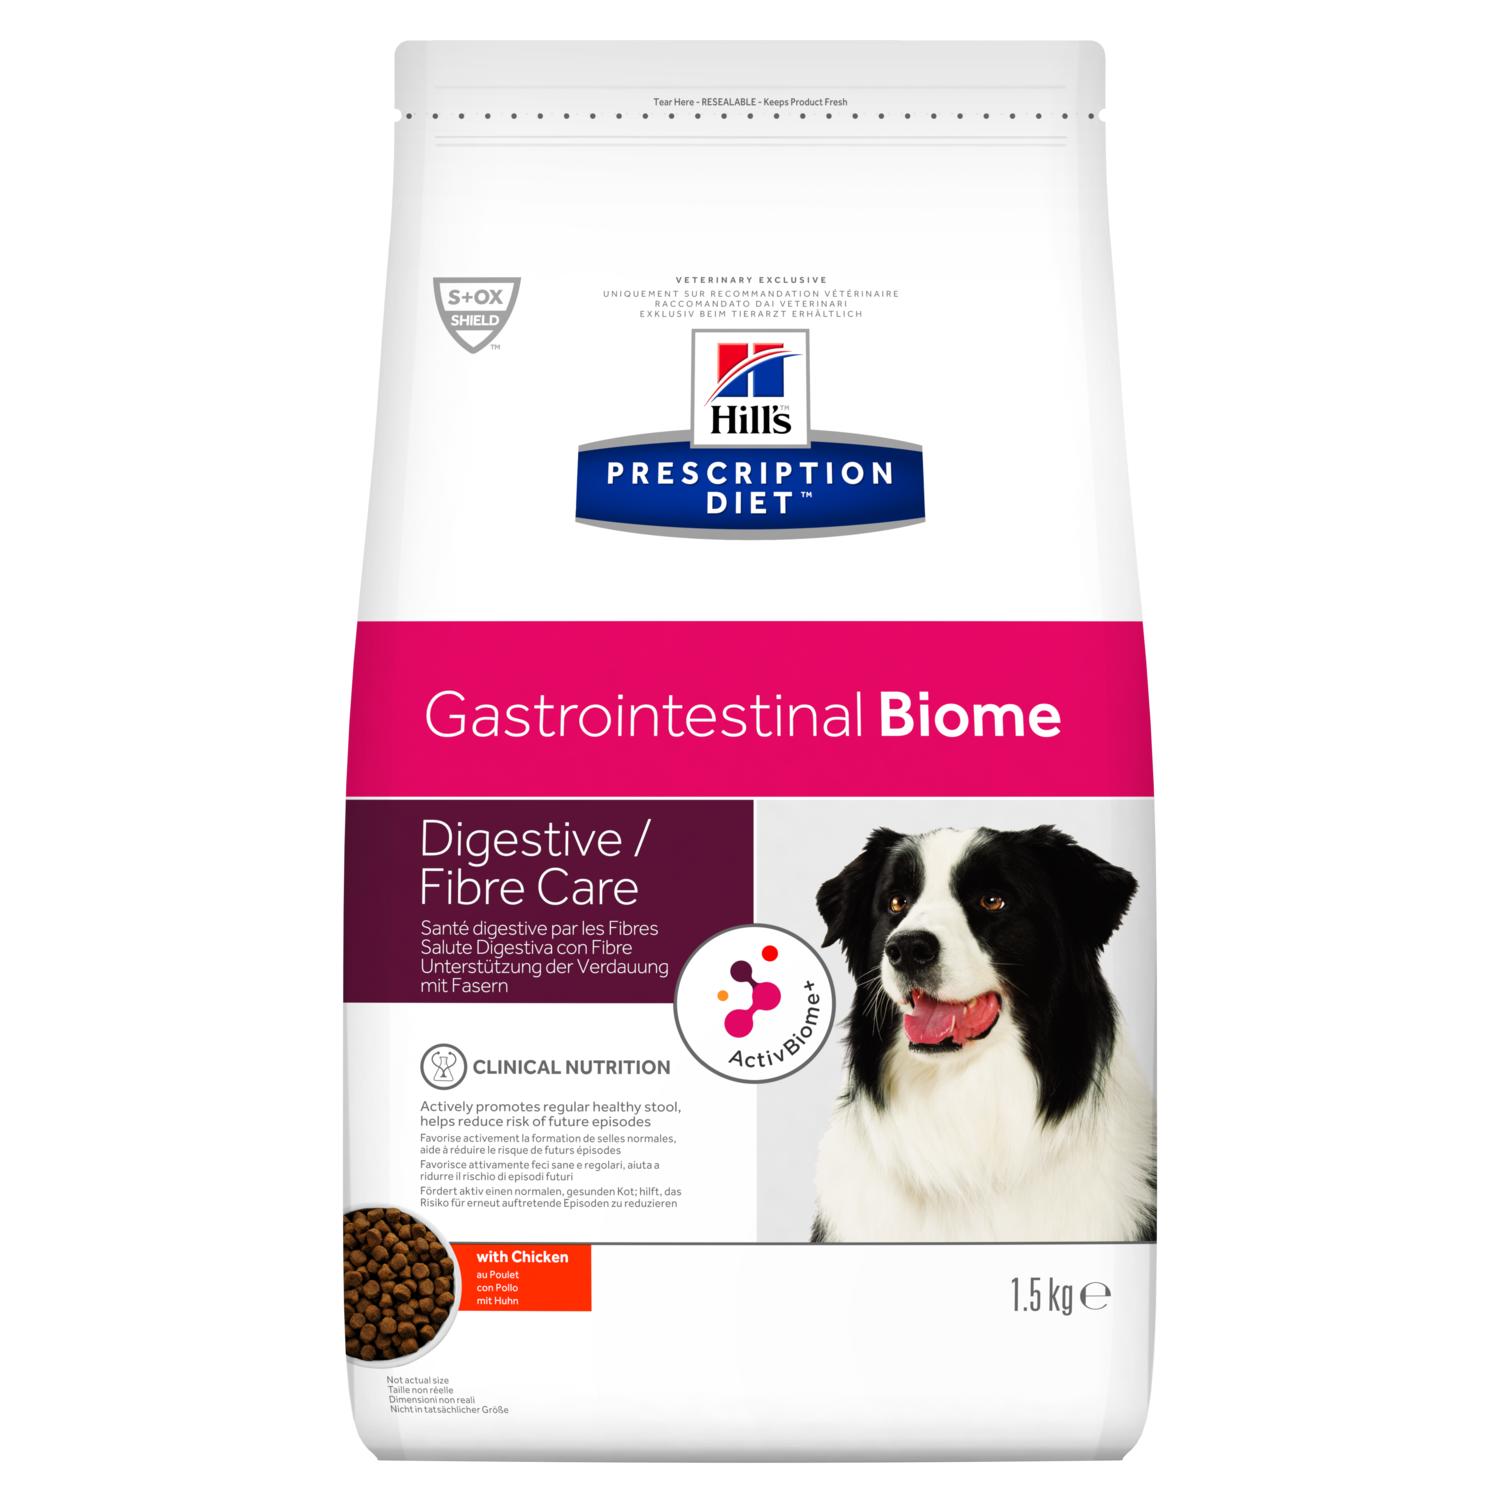 Hill's PRESCRIPTION DIET Gastrointestinal Biome – лікувальний сухий корм для собак підтримує регулярний стул і допомагає знизити ризик порушення травлення